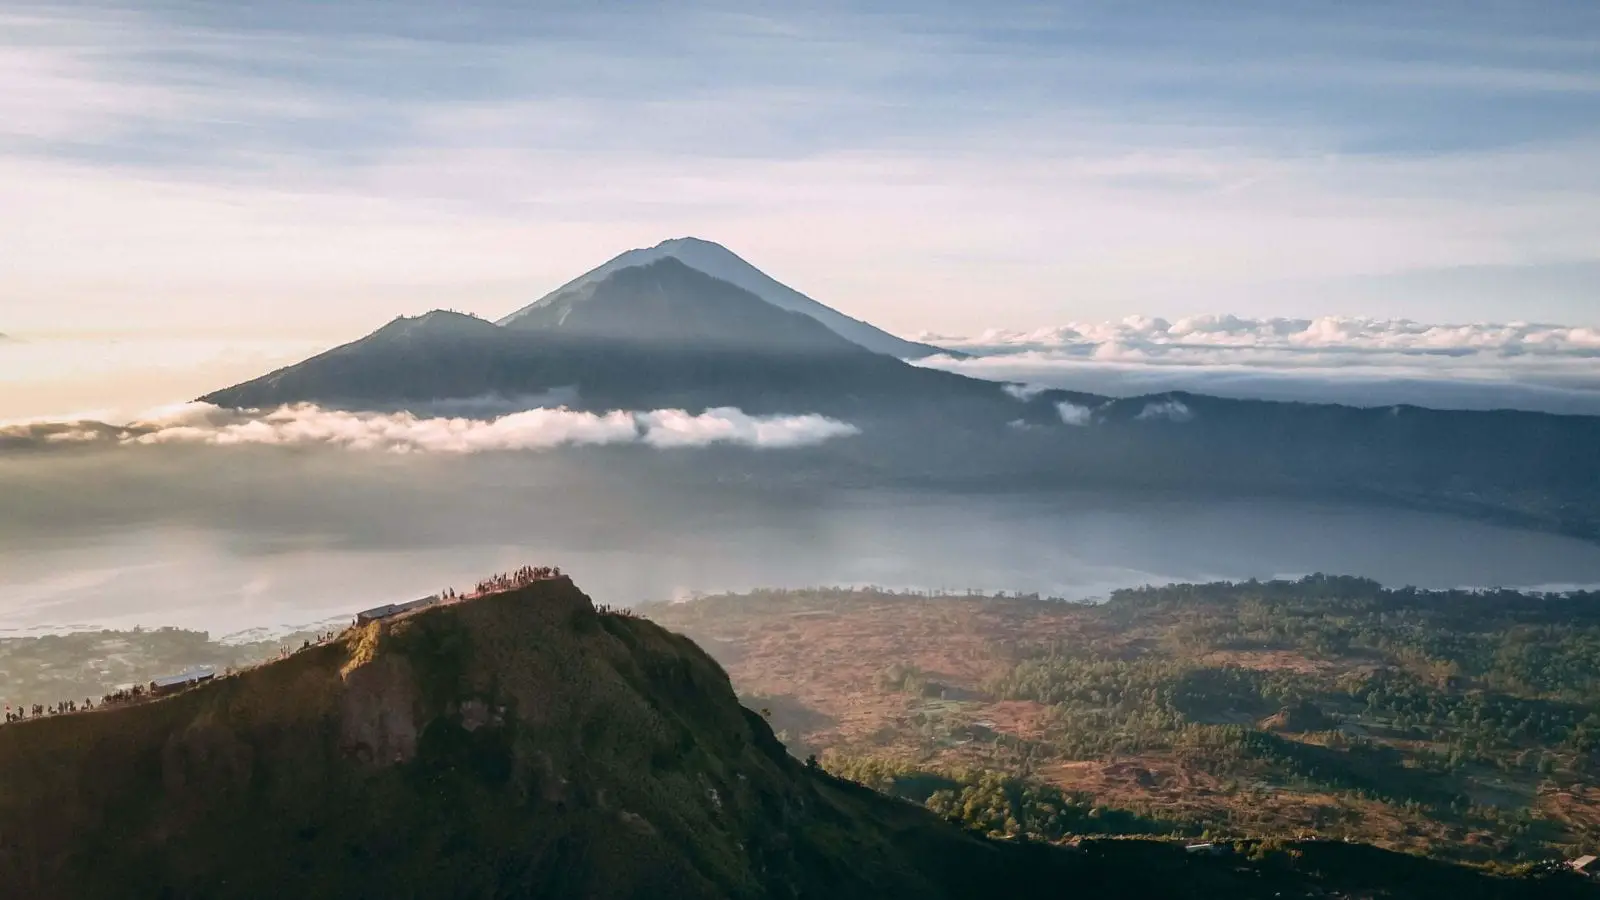 Ubud 3 day itinerary - Mount Batur